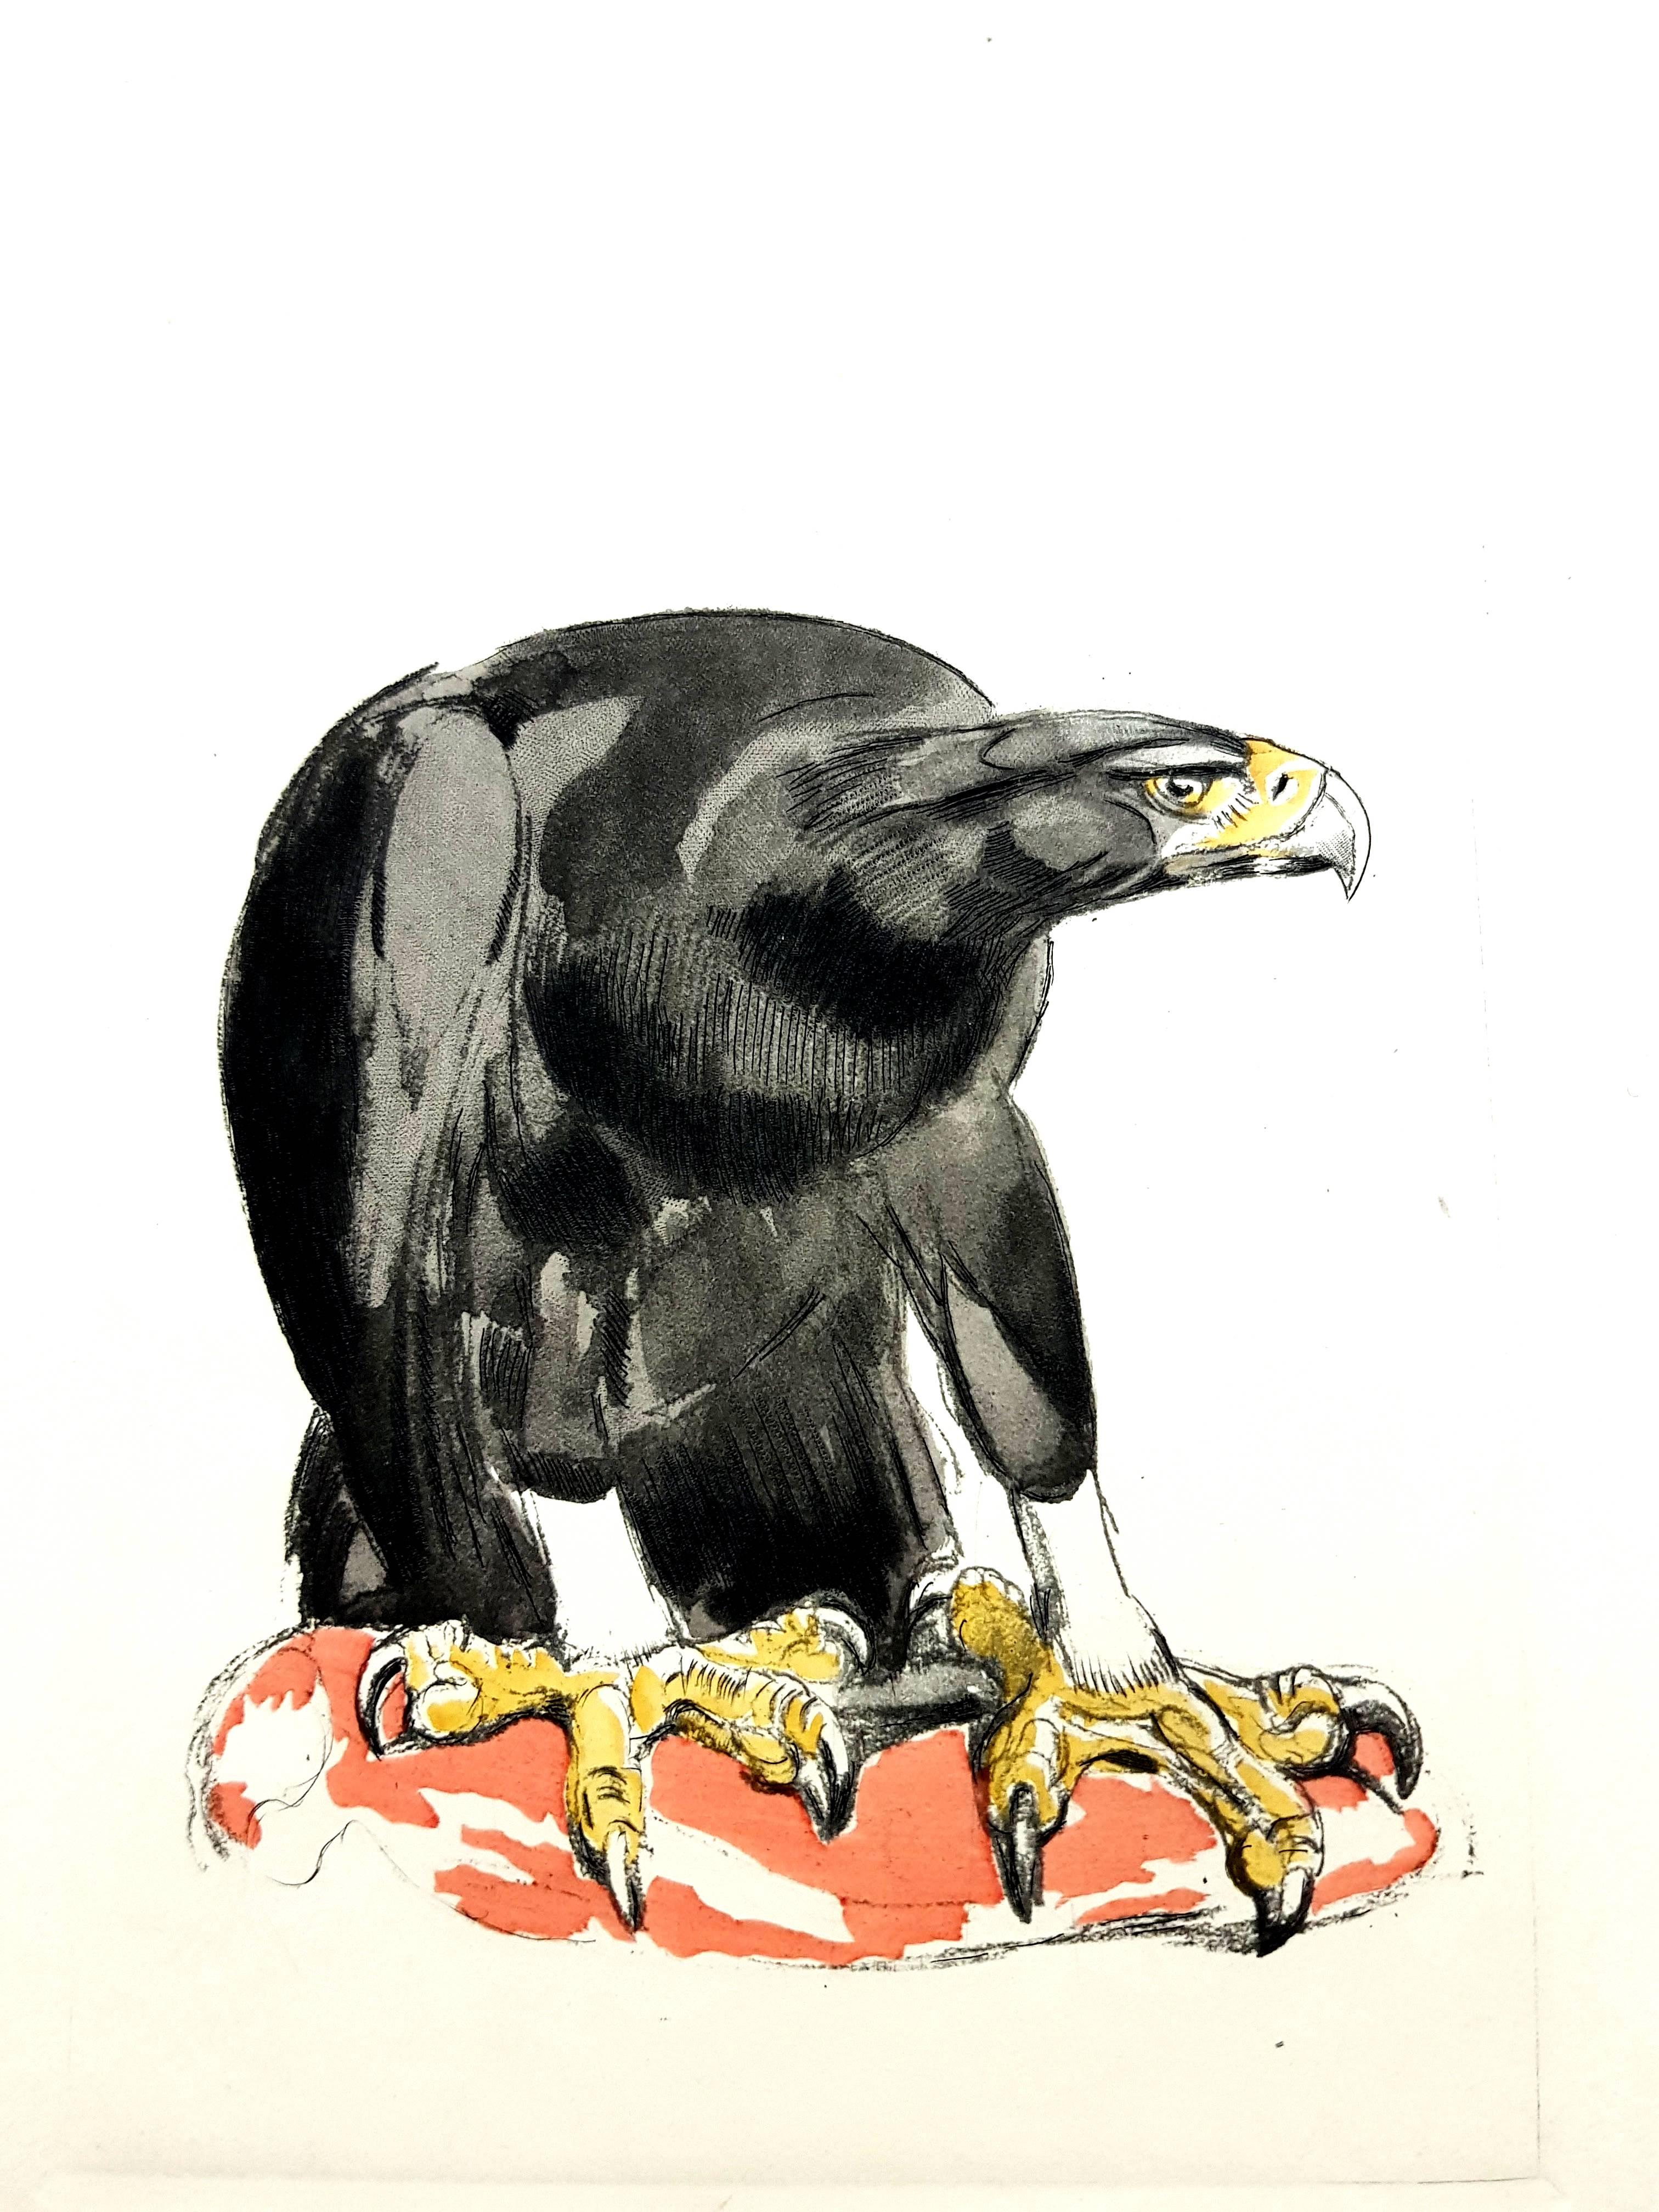 Pierre-Paul Jouve Animal Print - Paul Jouve - Eagle - Original Engraving